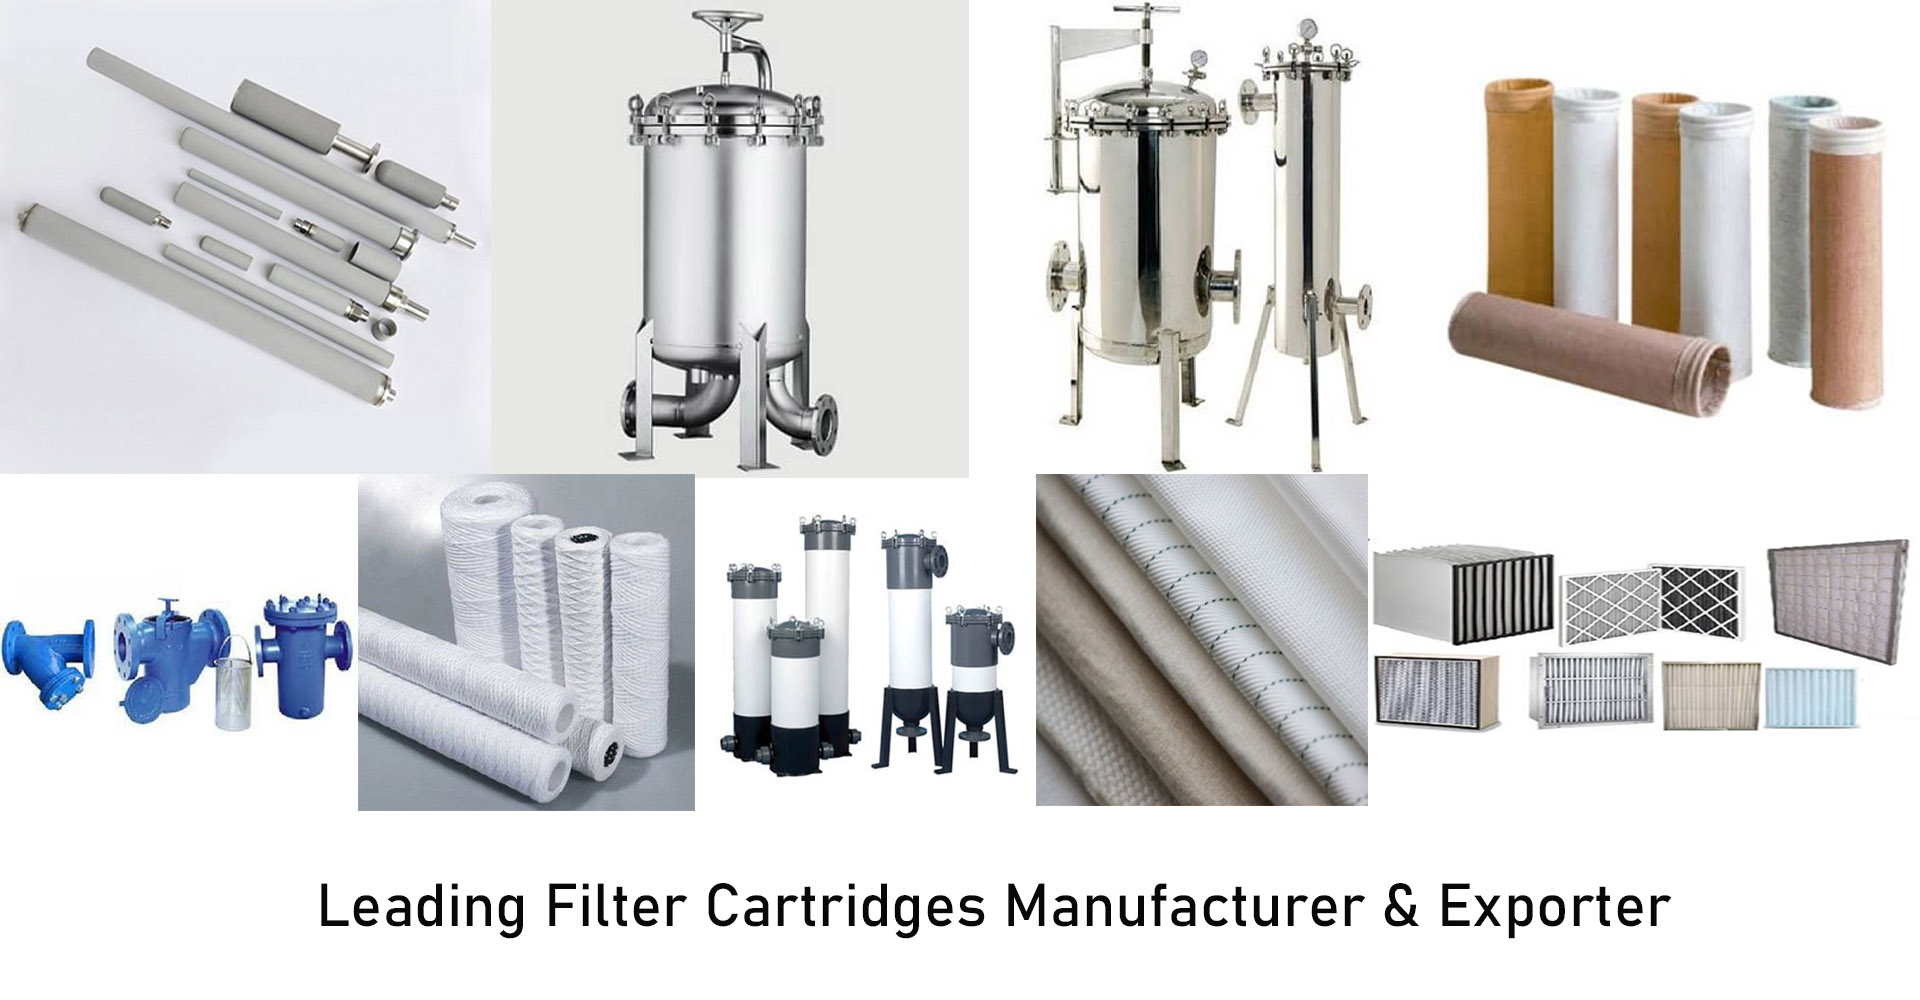 Filter Cartridges Manufacturer in UK